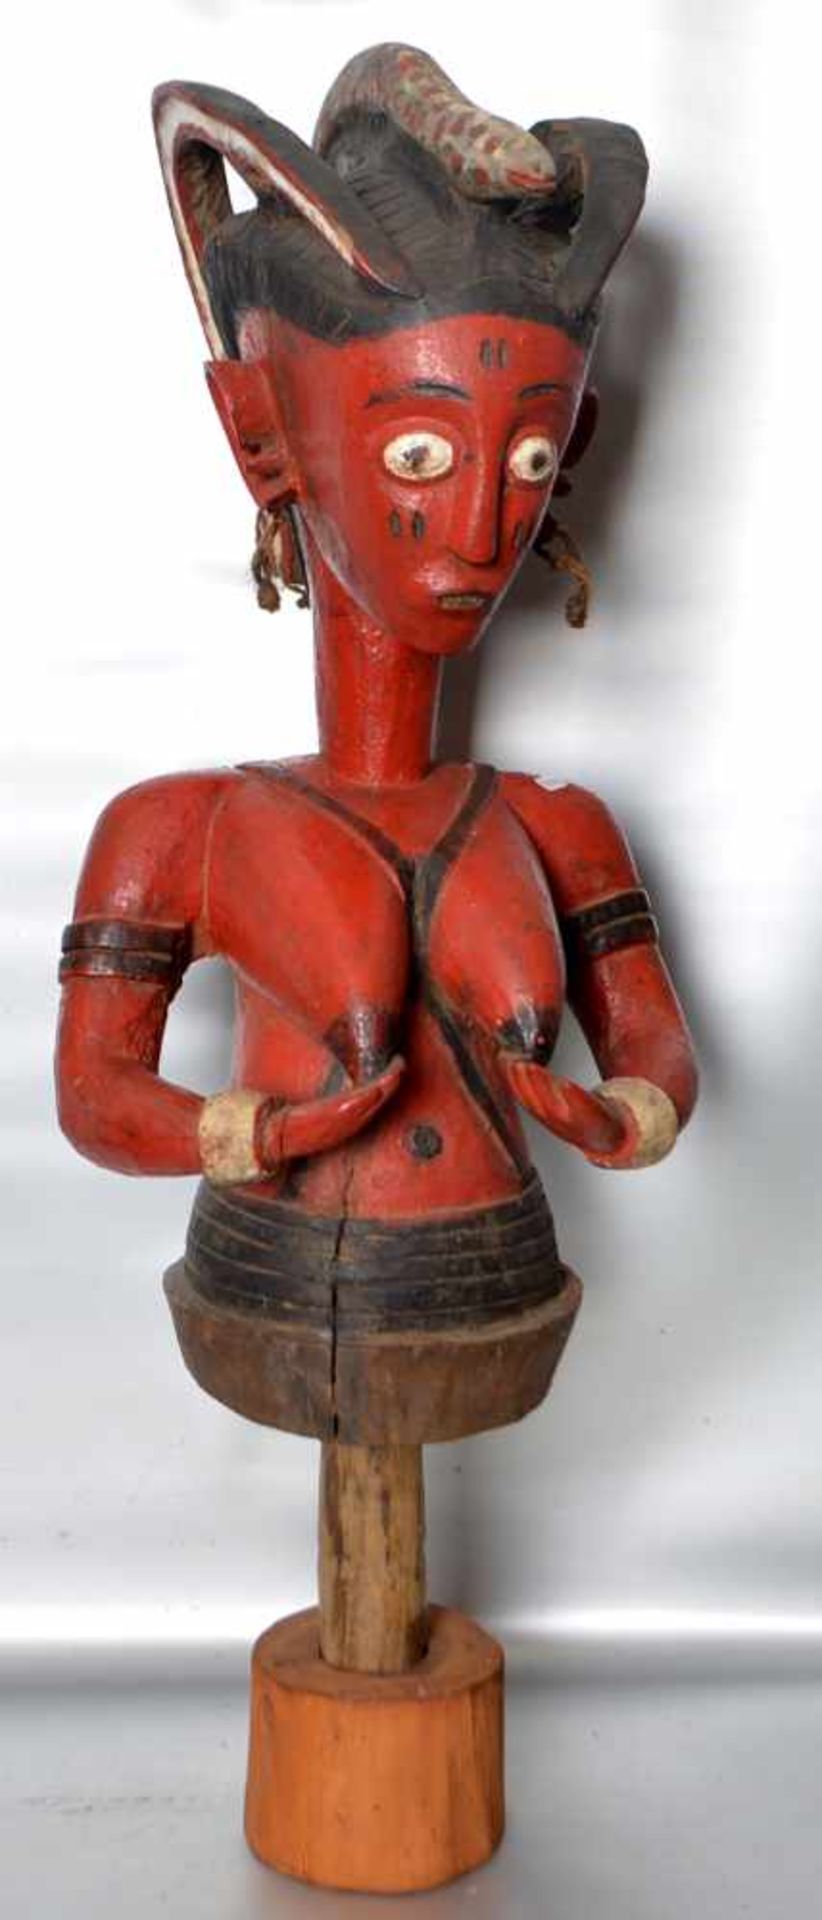 SkulpturBüste einer Frau mit Schlange auf dem Kopf, auf rundem Sockel, schwarz/rot gefasst, H mit